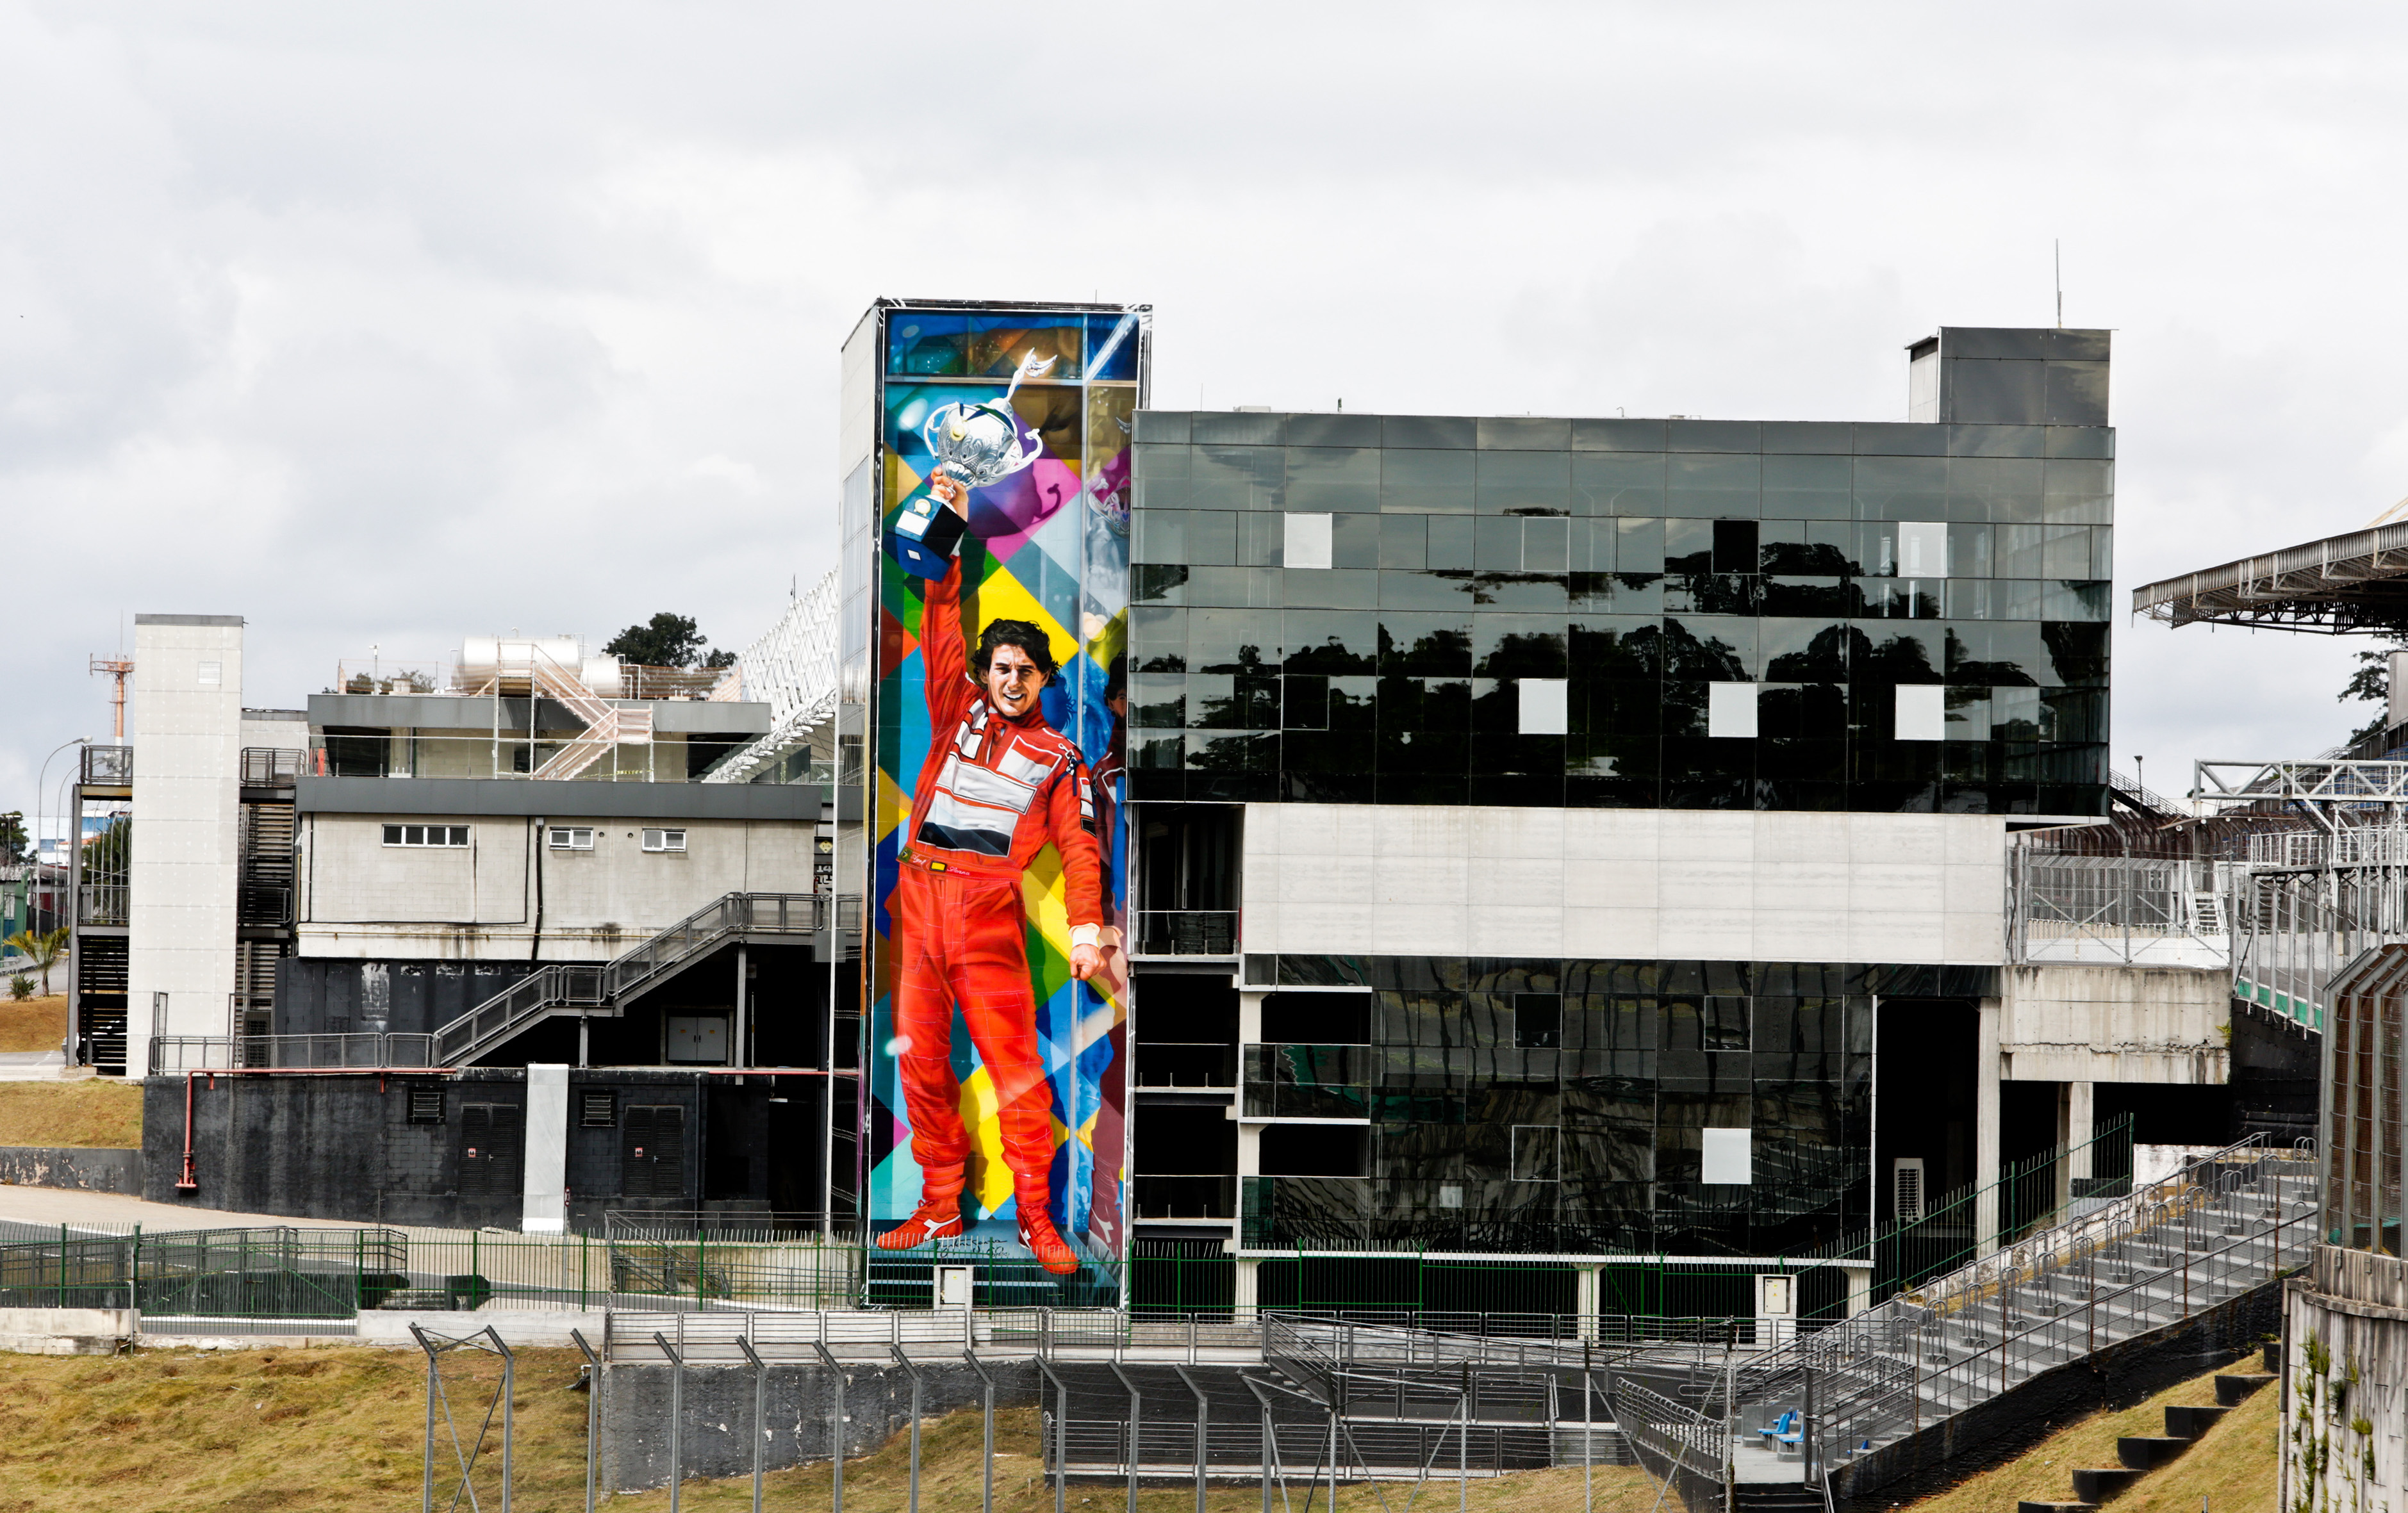 Imagem mostra um mural dentro do Autódromo de Interlagos criado pelo muralista Eduardo Kobra em homenagem a Ayrton Senna, piloto de Fórmula 1